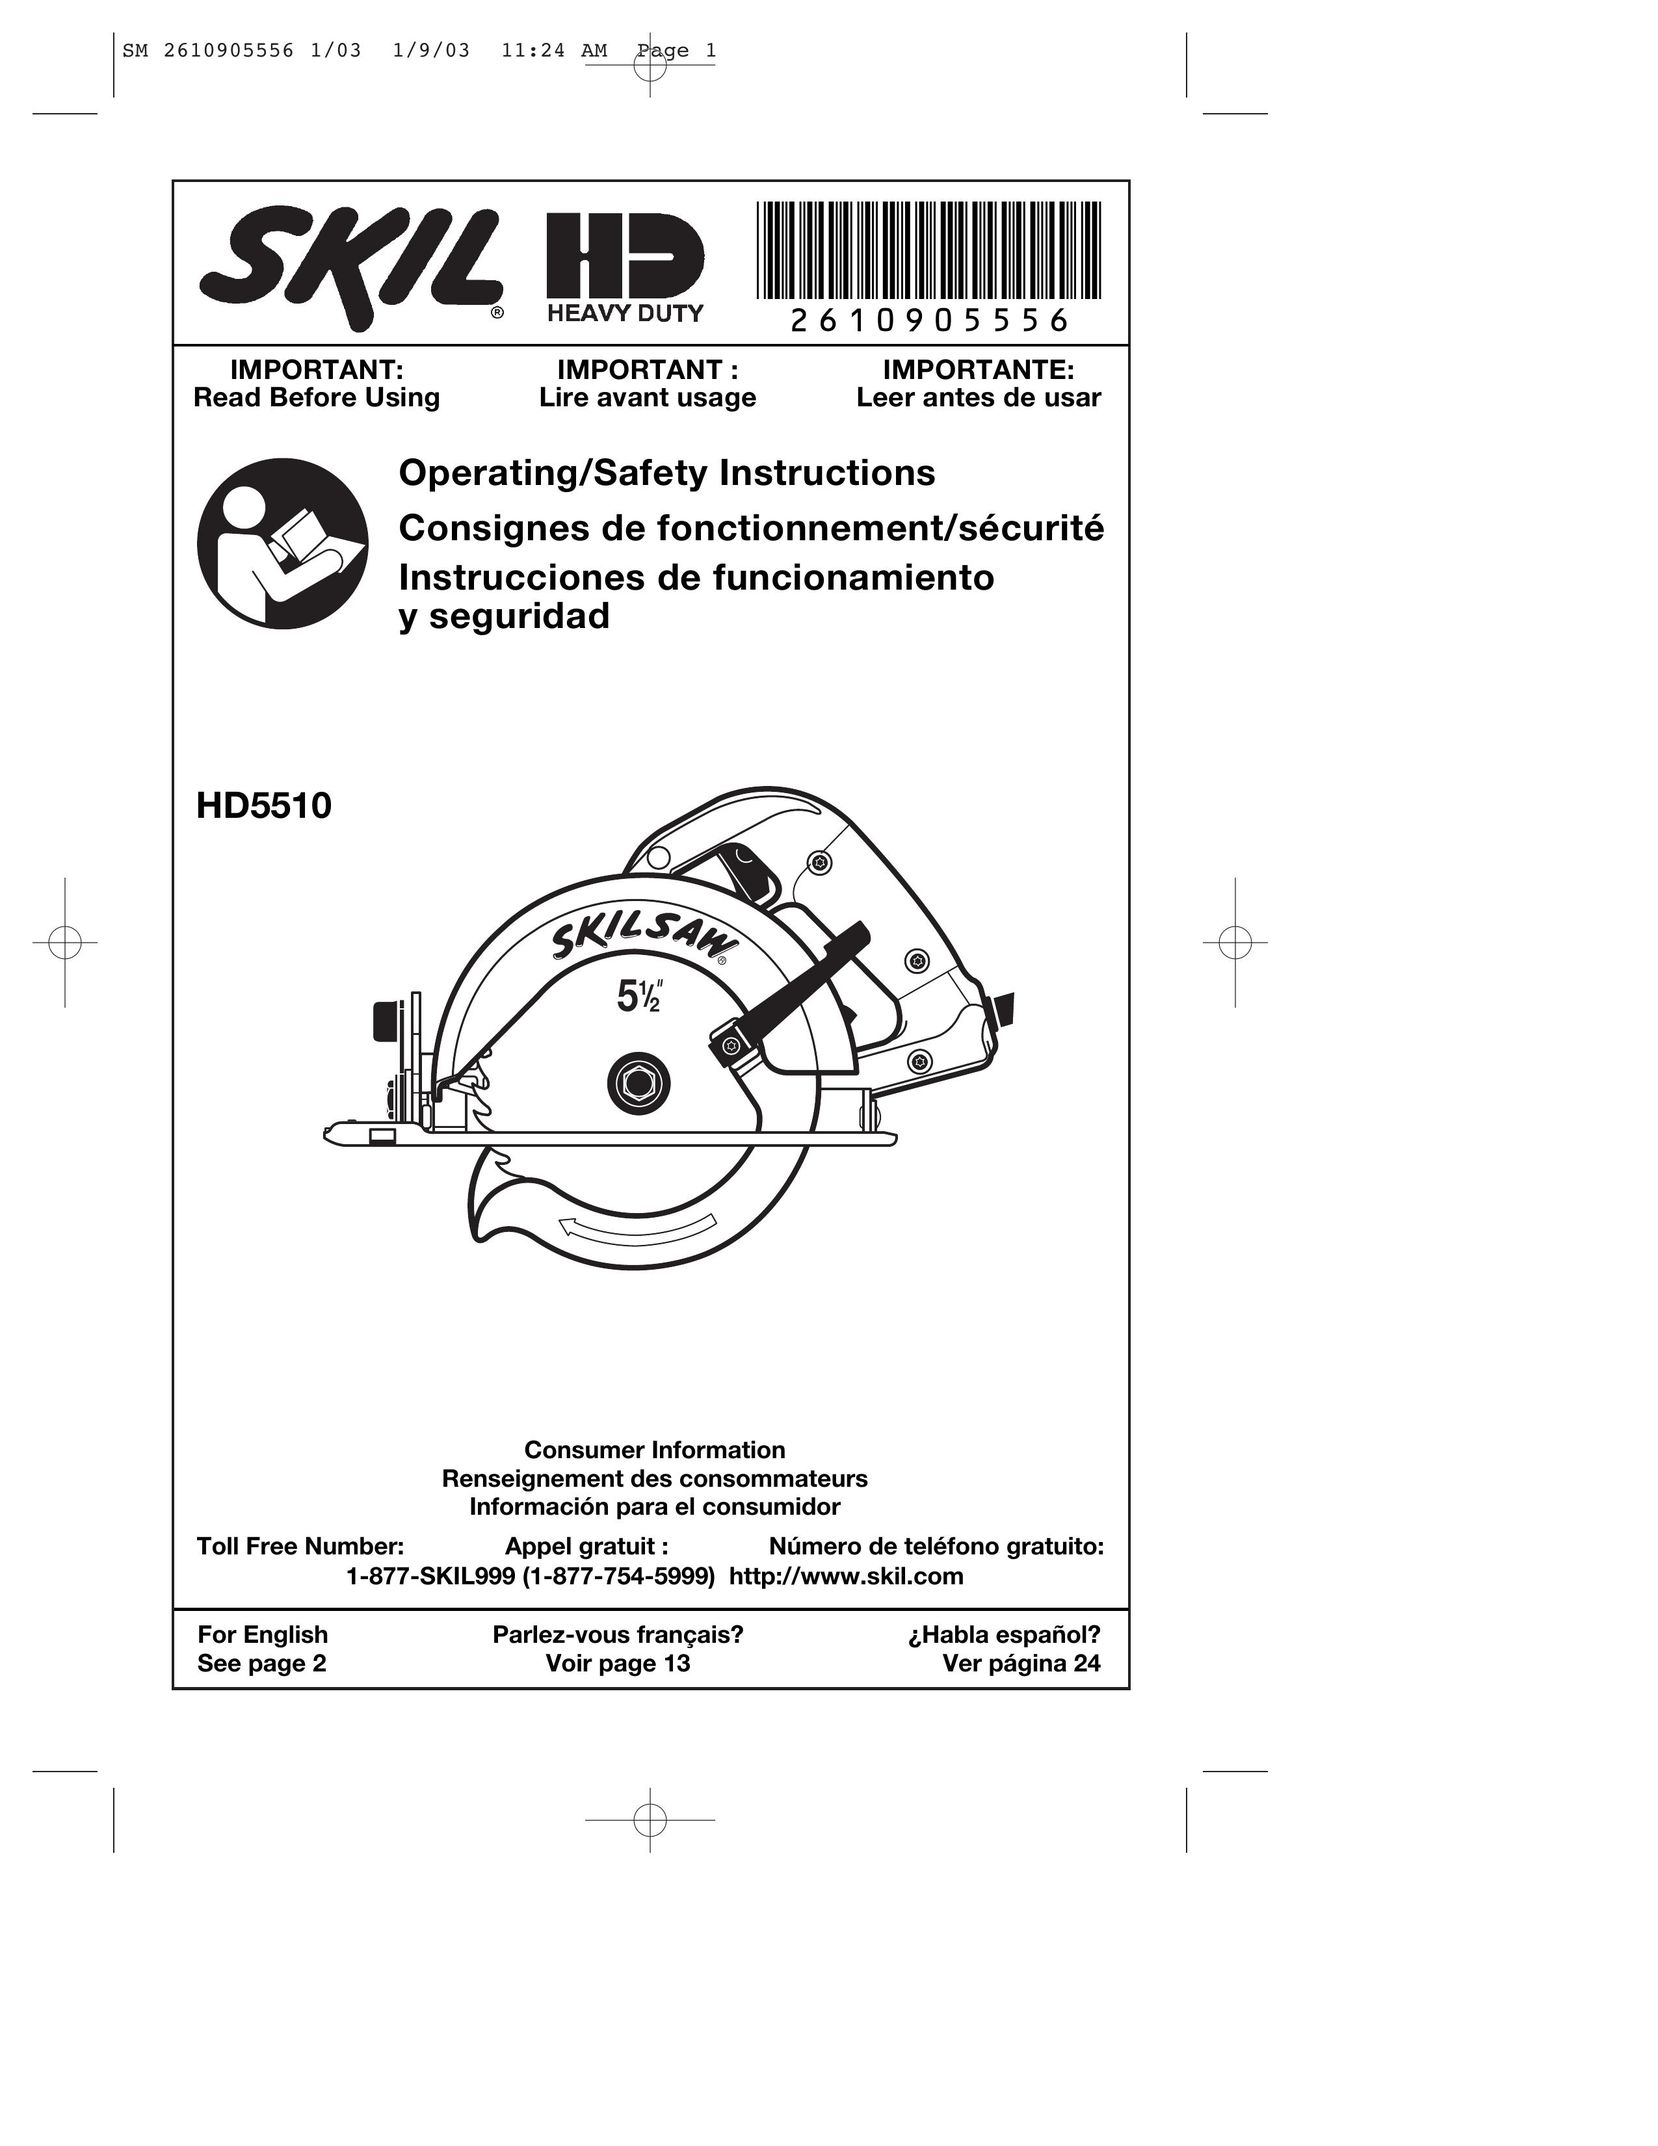 Skil HD5510 Saw User Manual